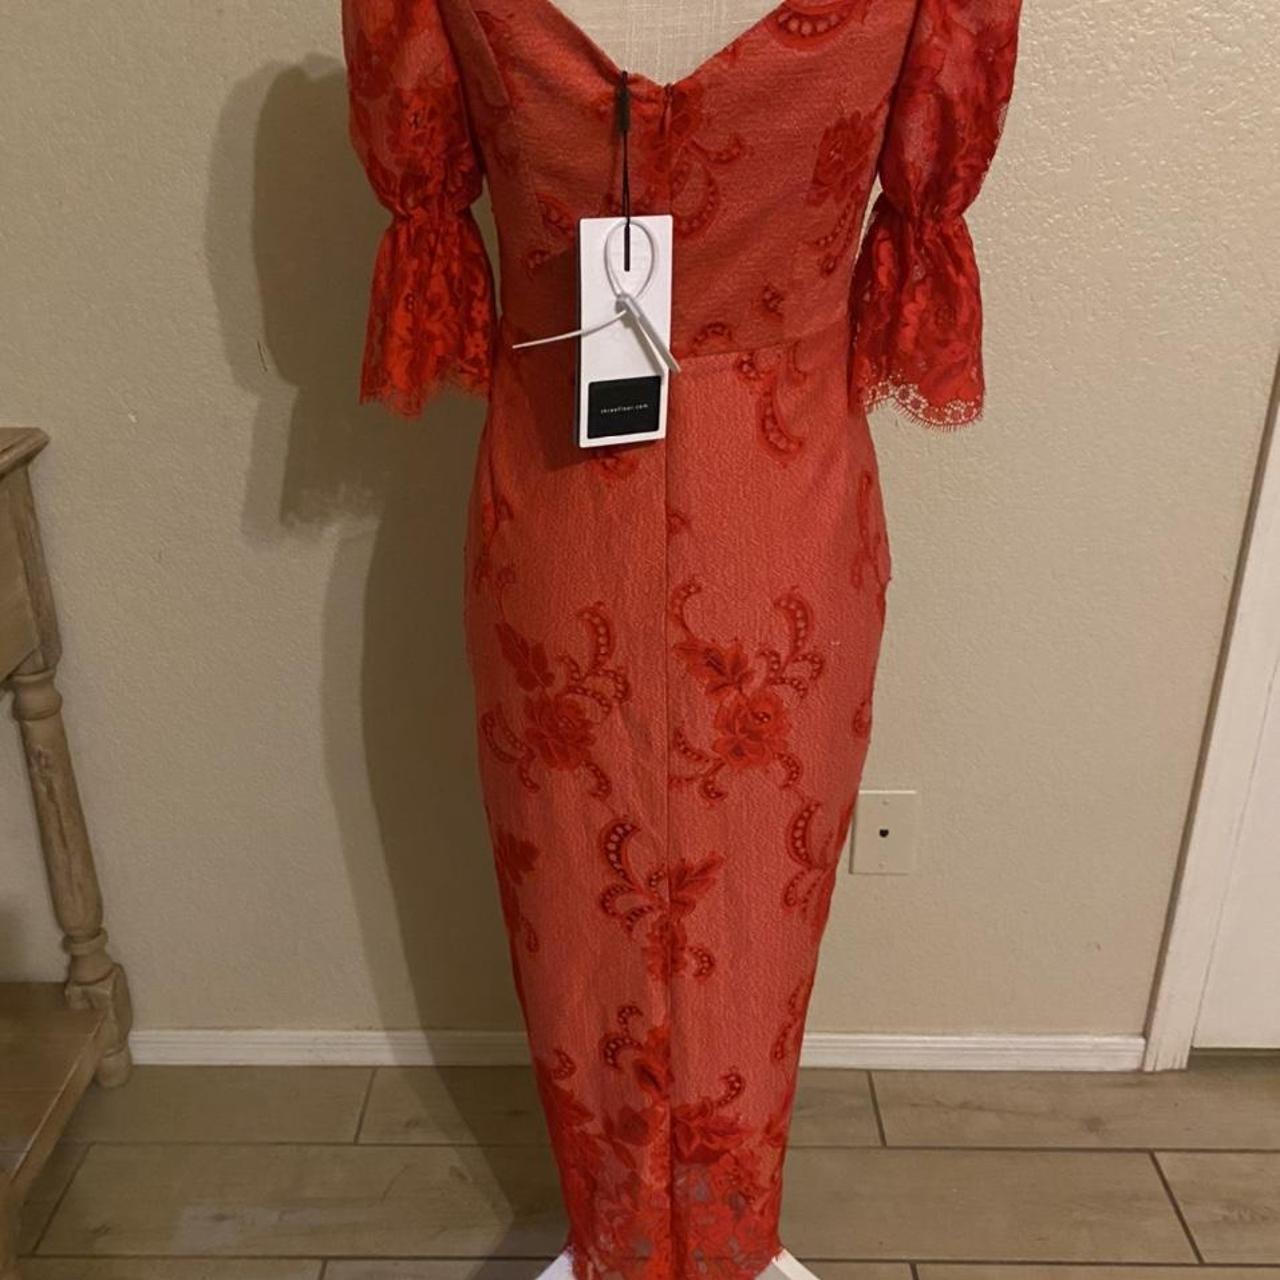 Product Image 2 - Three floor red dress!!!

#threefloor #dresses